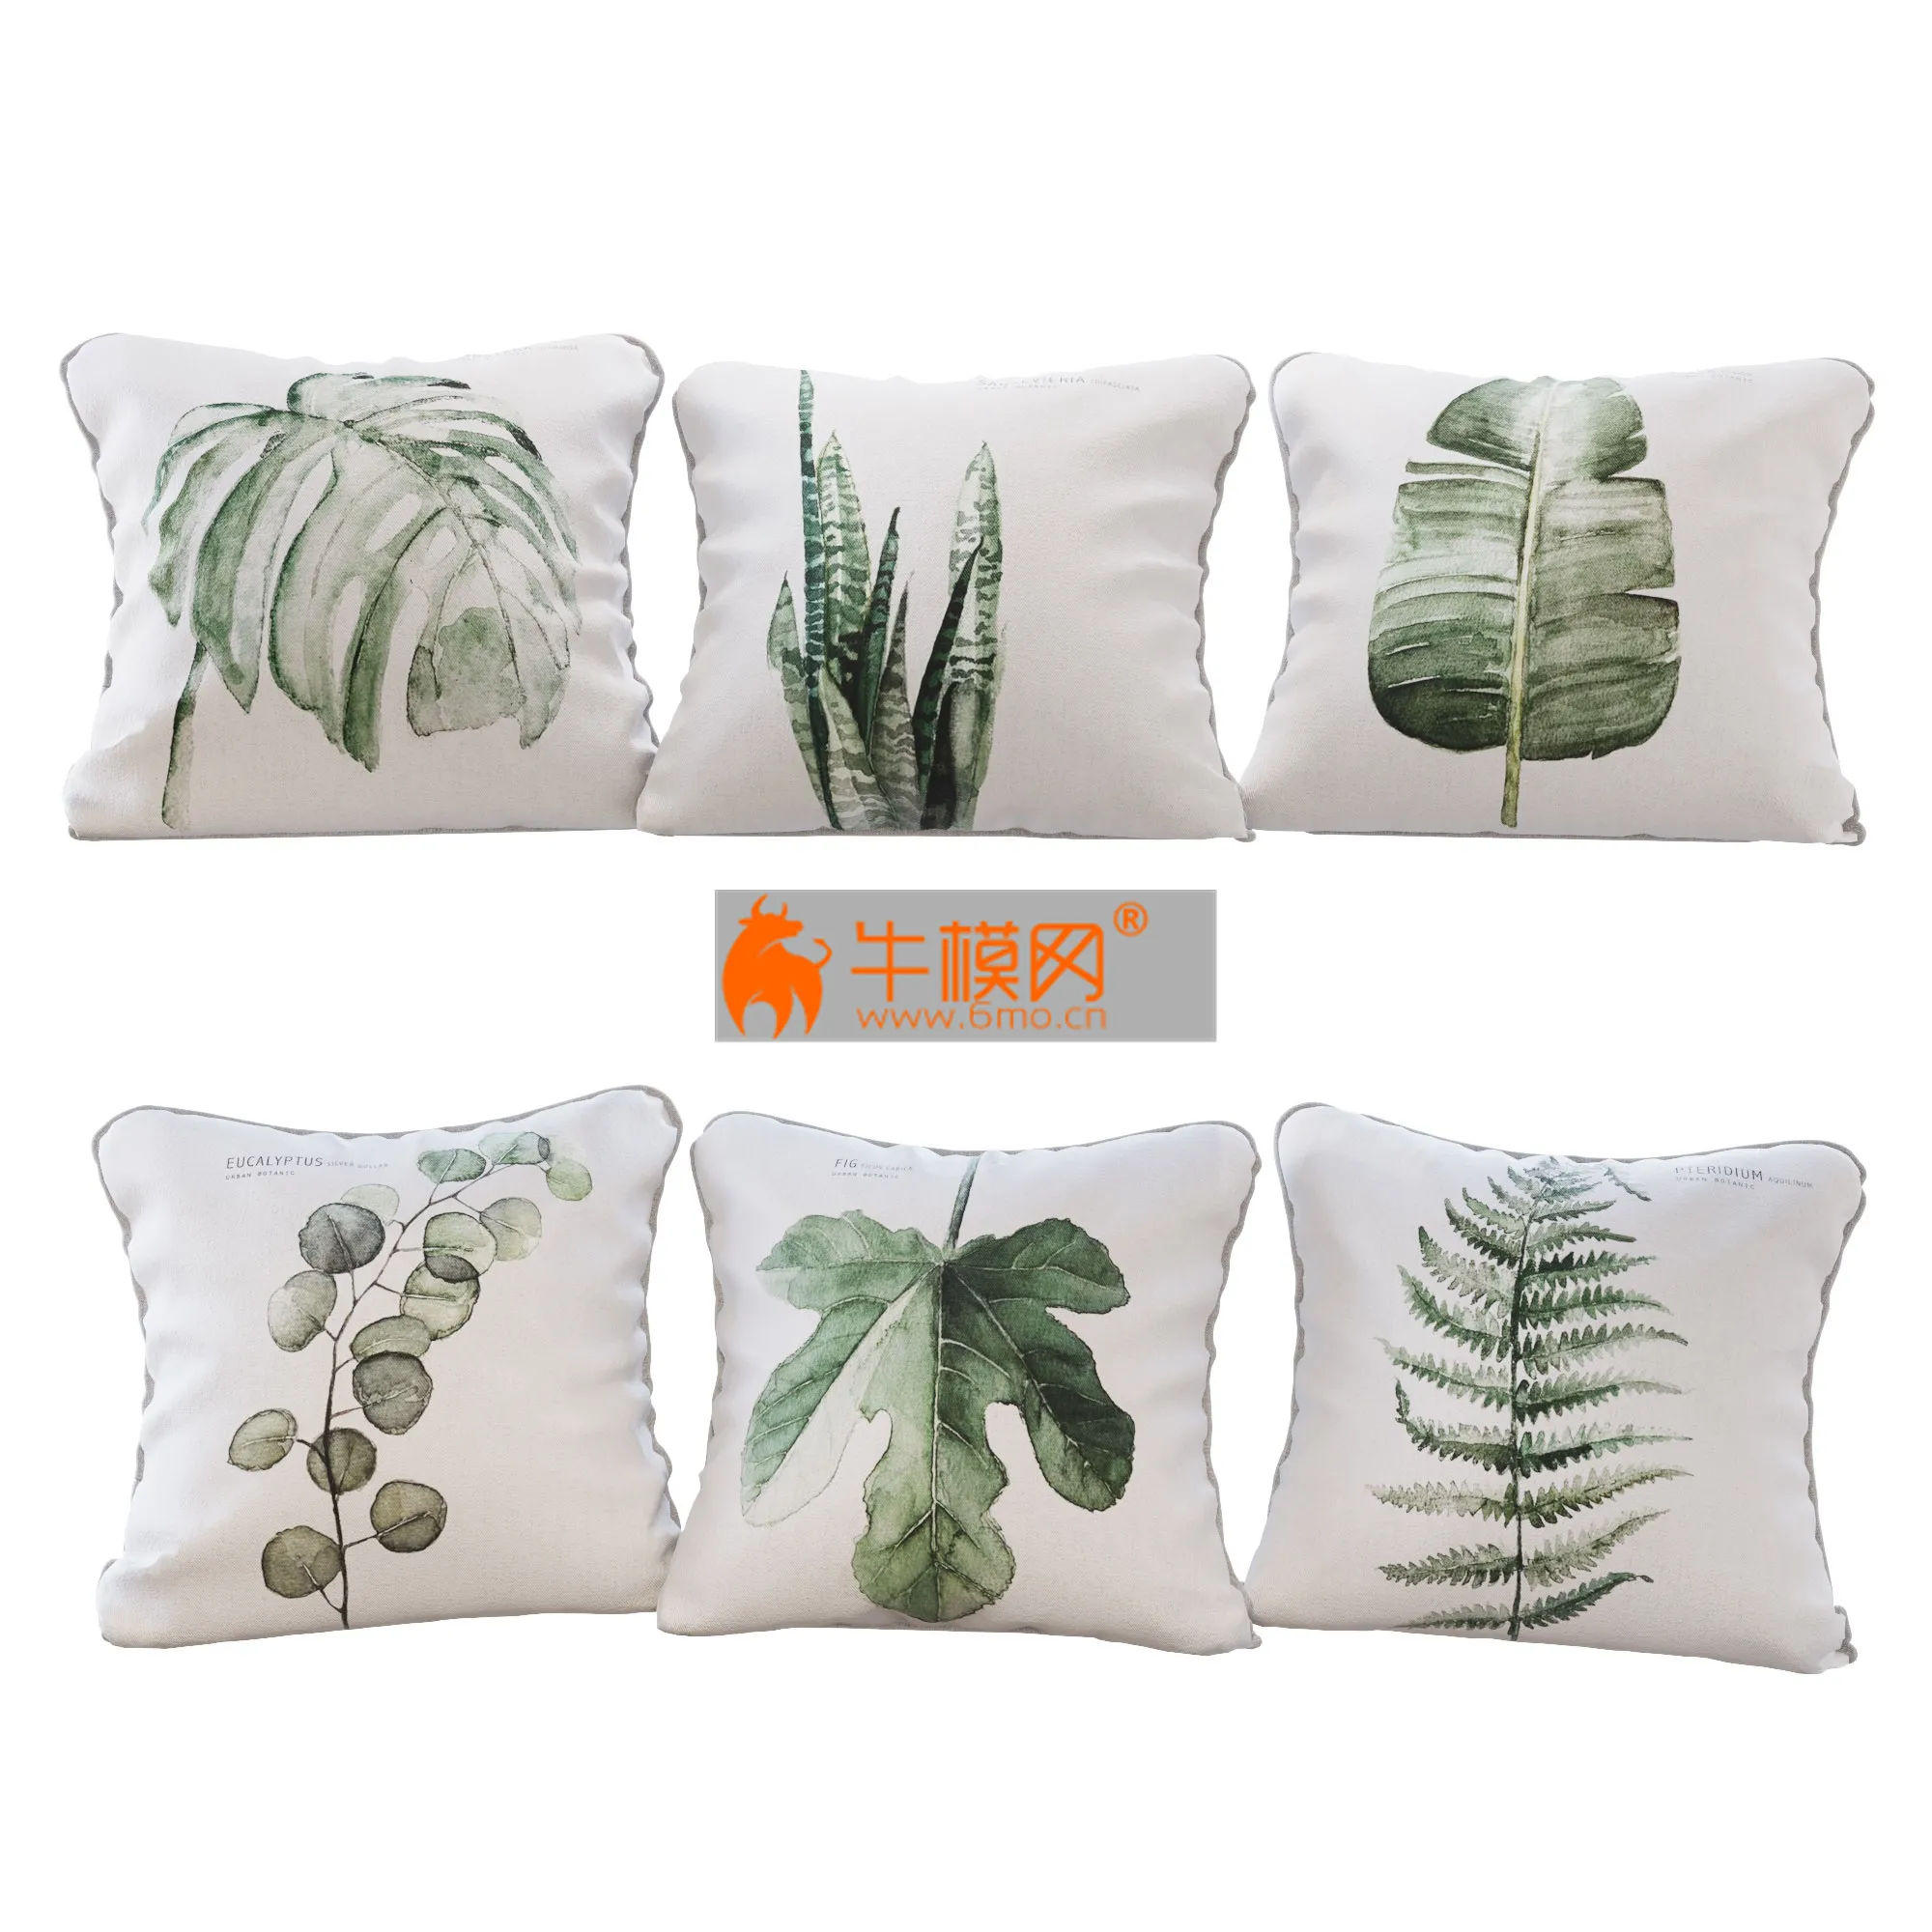 Set of 6 pillows with Urban Botanic 01 print – 2788